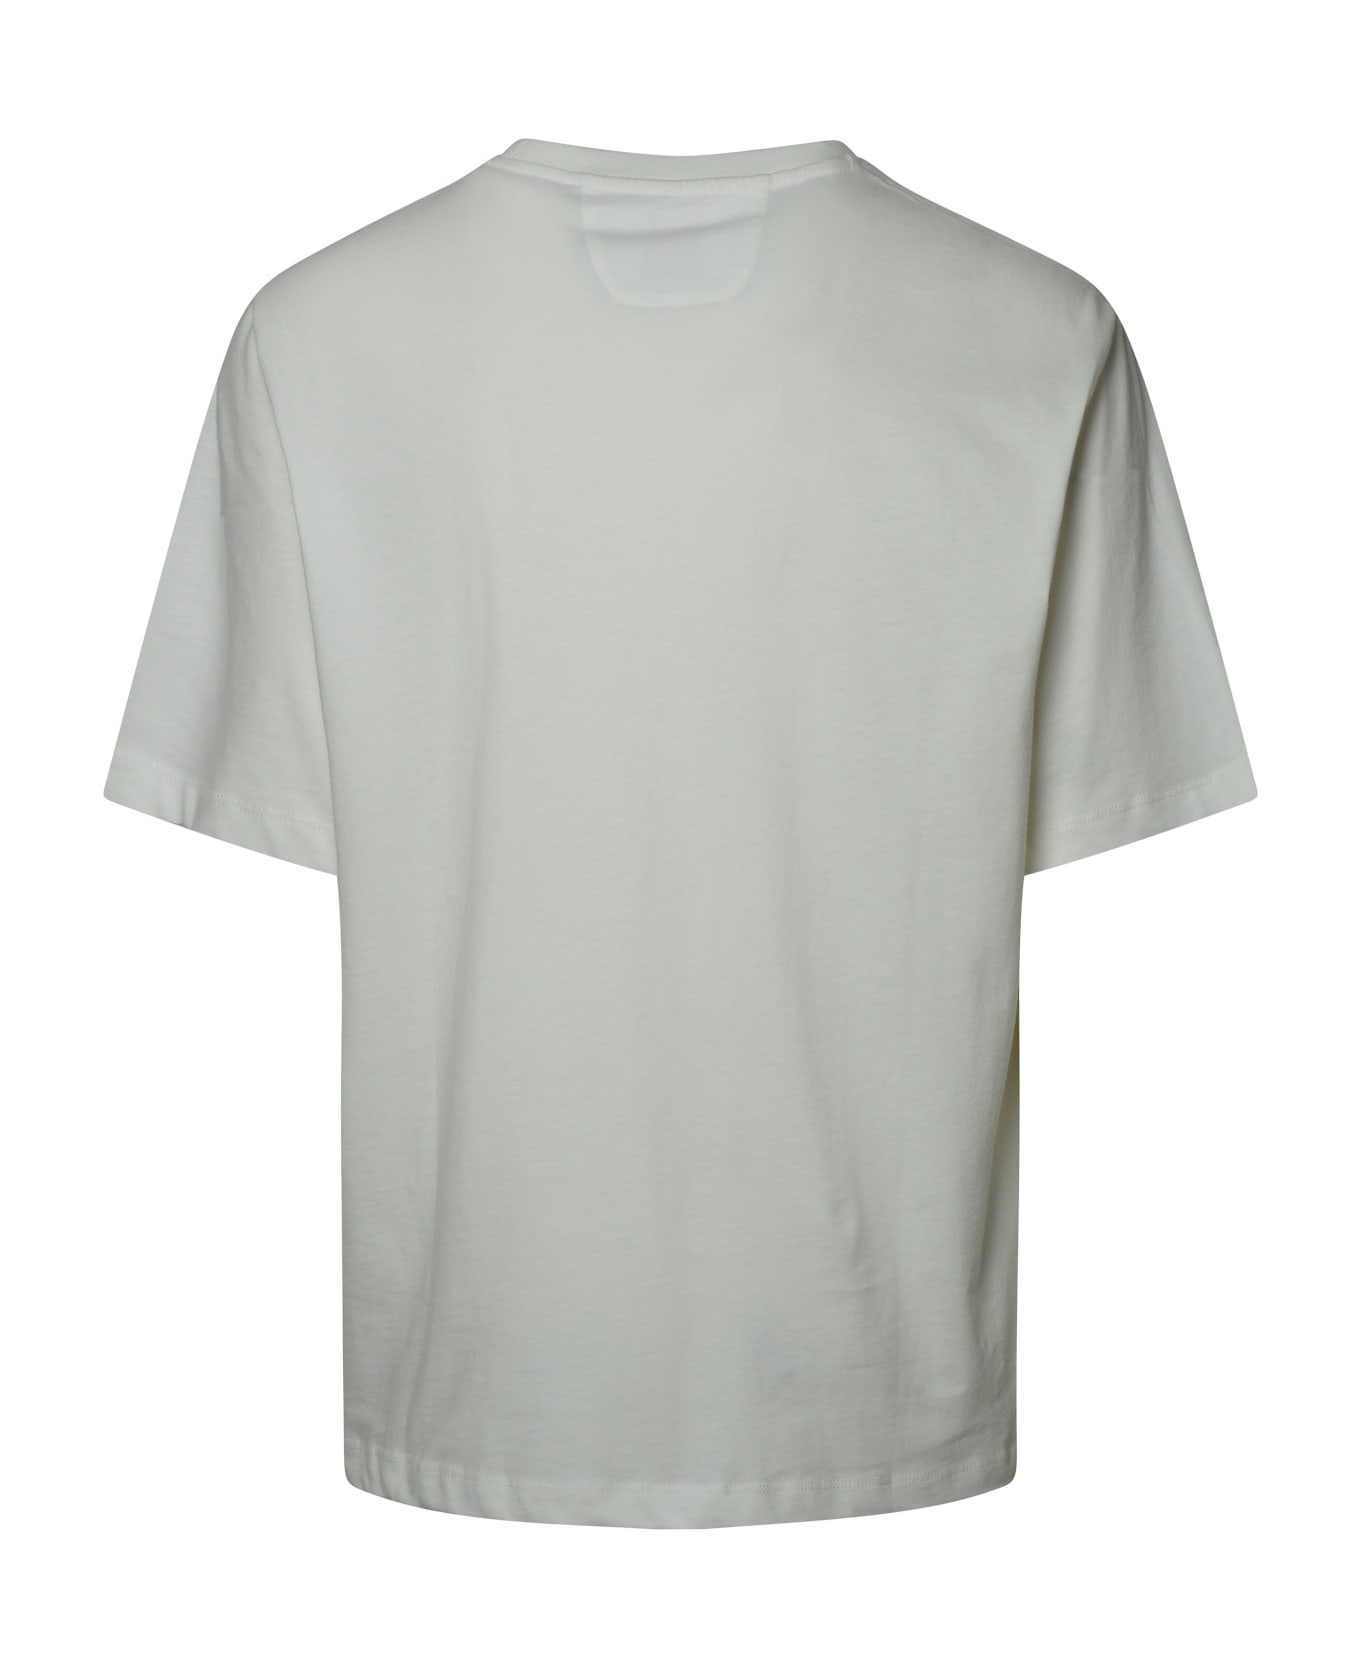 Ferrari White Cotton T-shirt - White シャツ